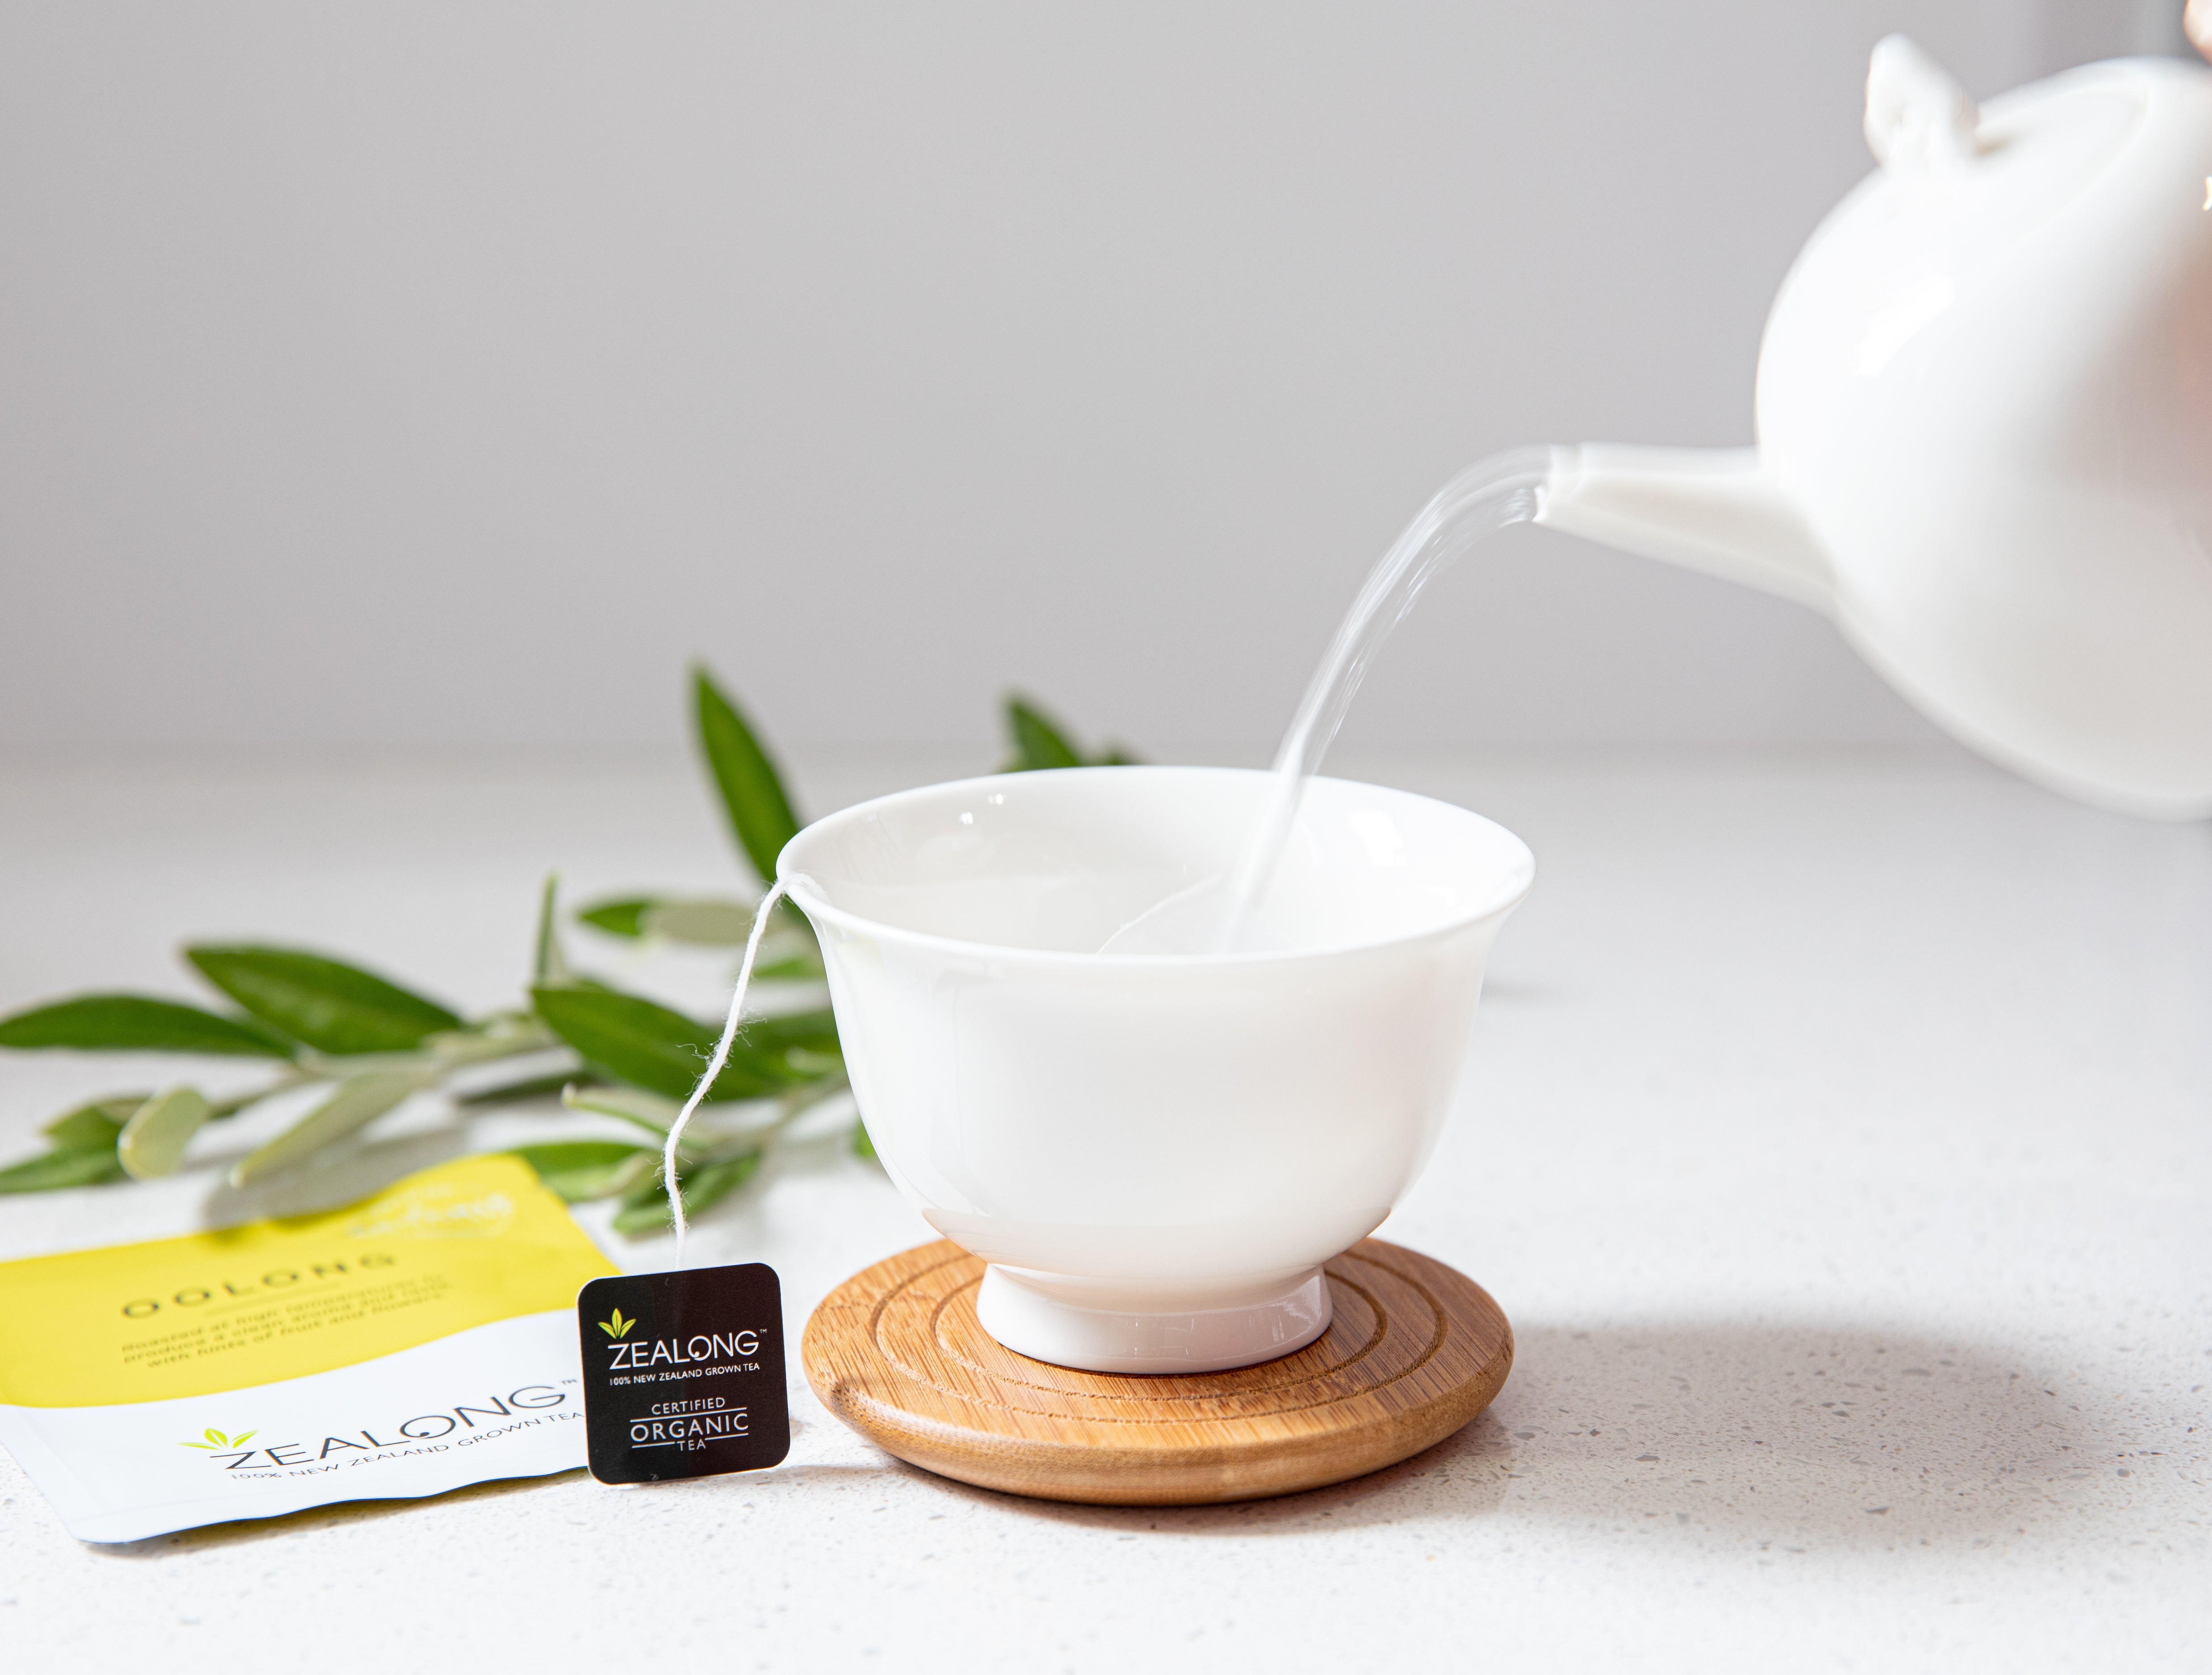 Taria - Official USA Importer of Zealong Organic Tea, New Zealand 